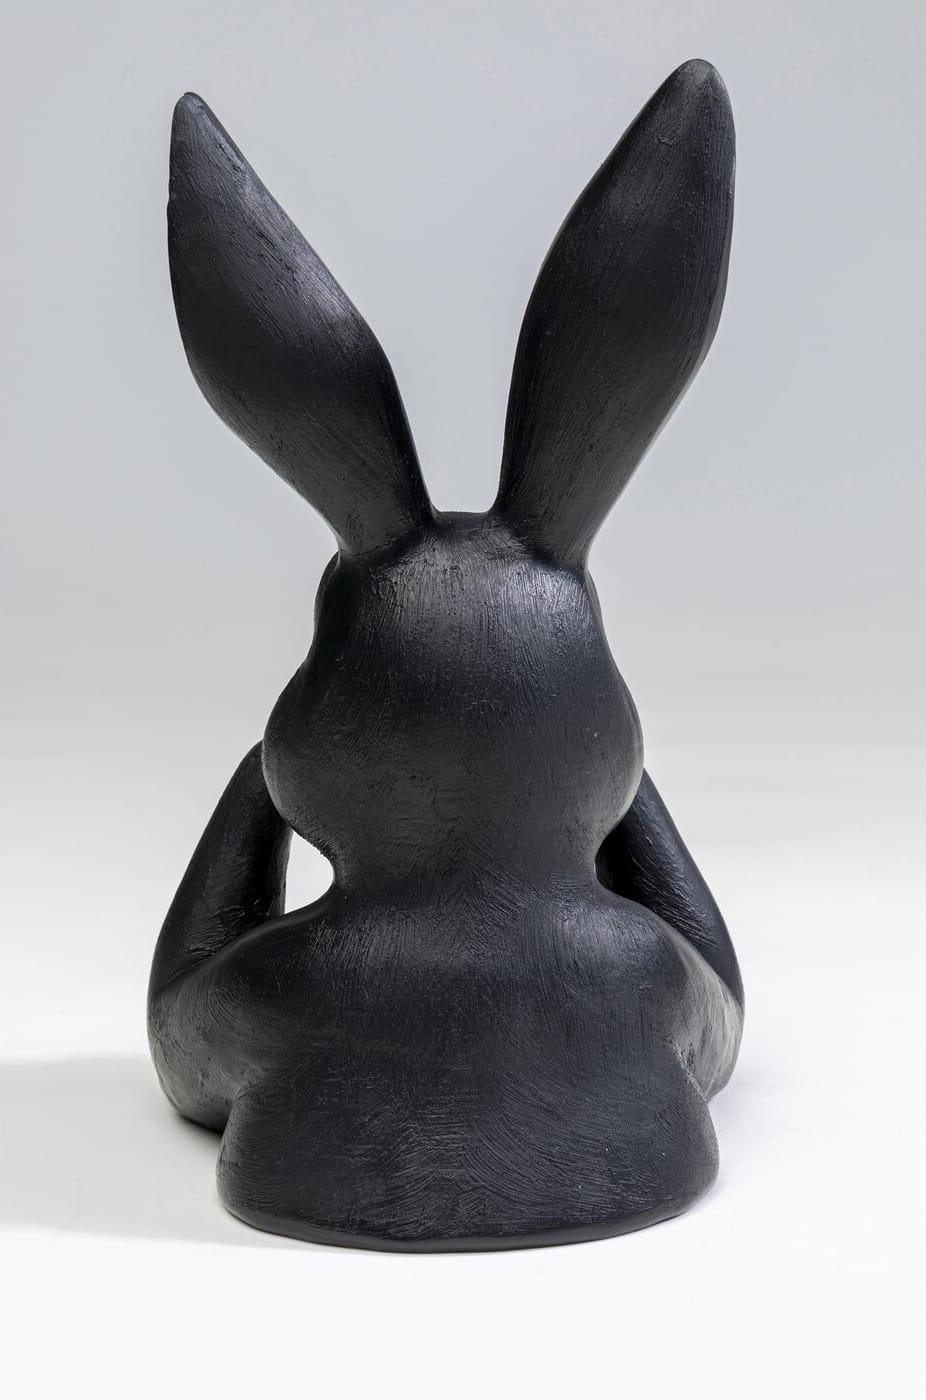 KARE Design Figura decorativa Dolce Coniglio nero 23  